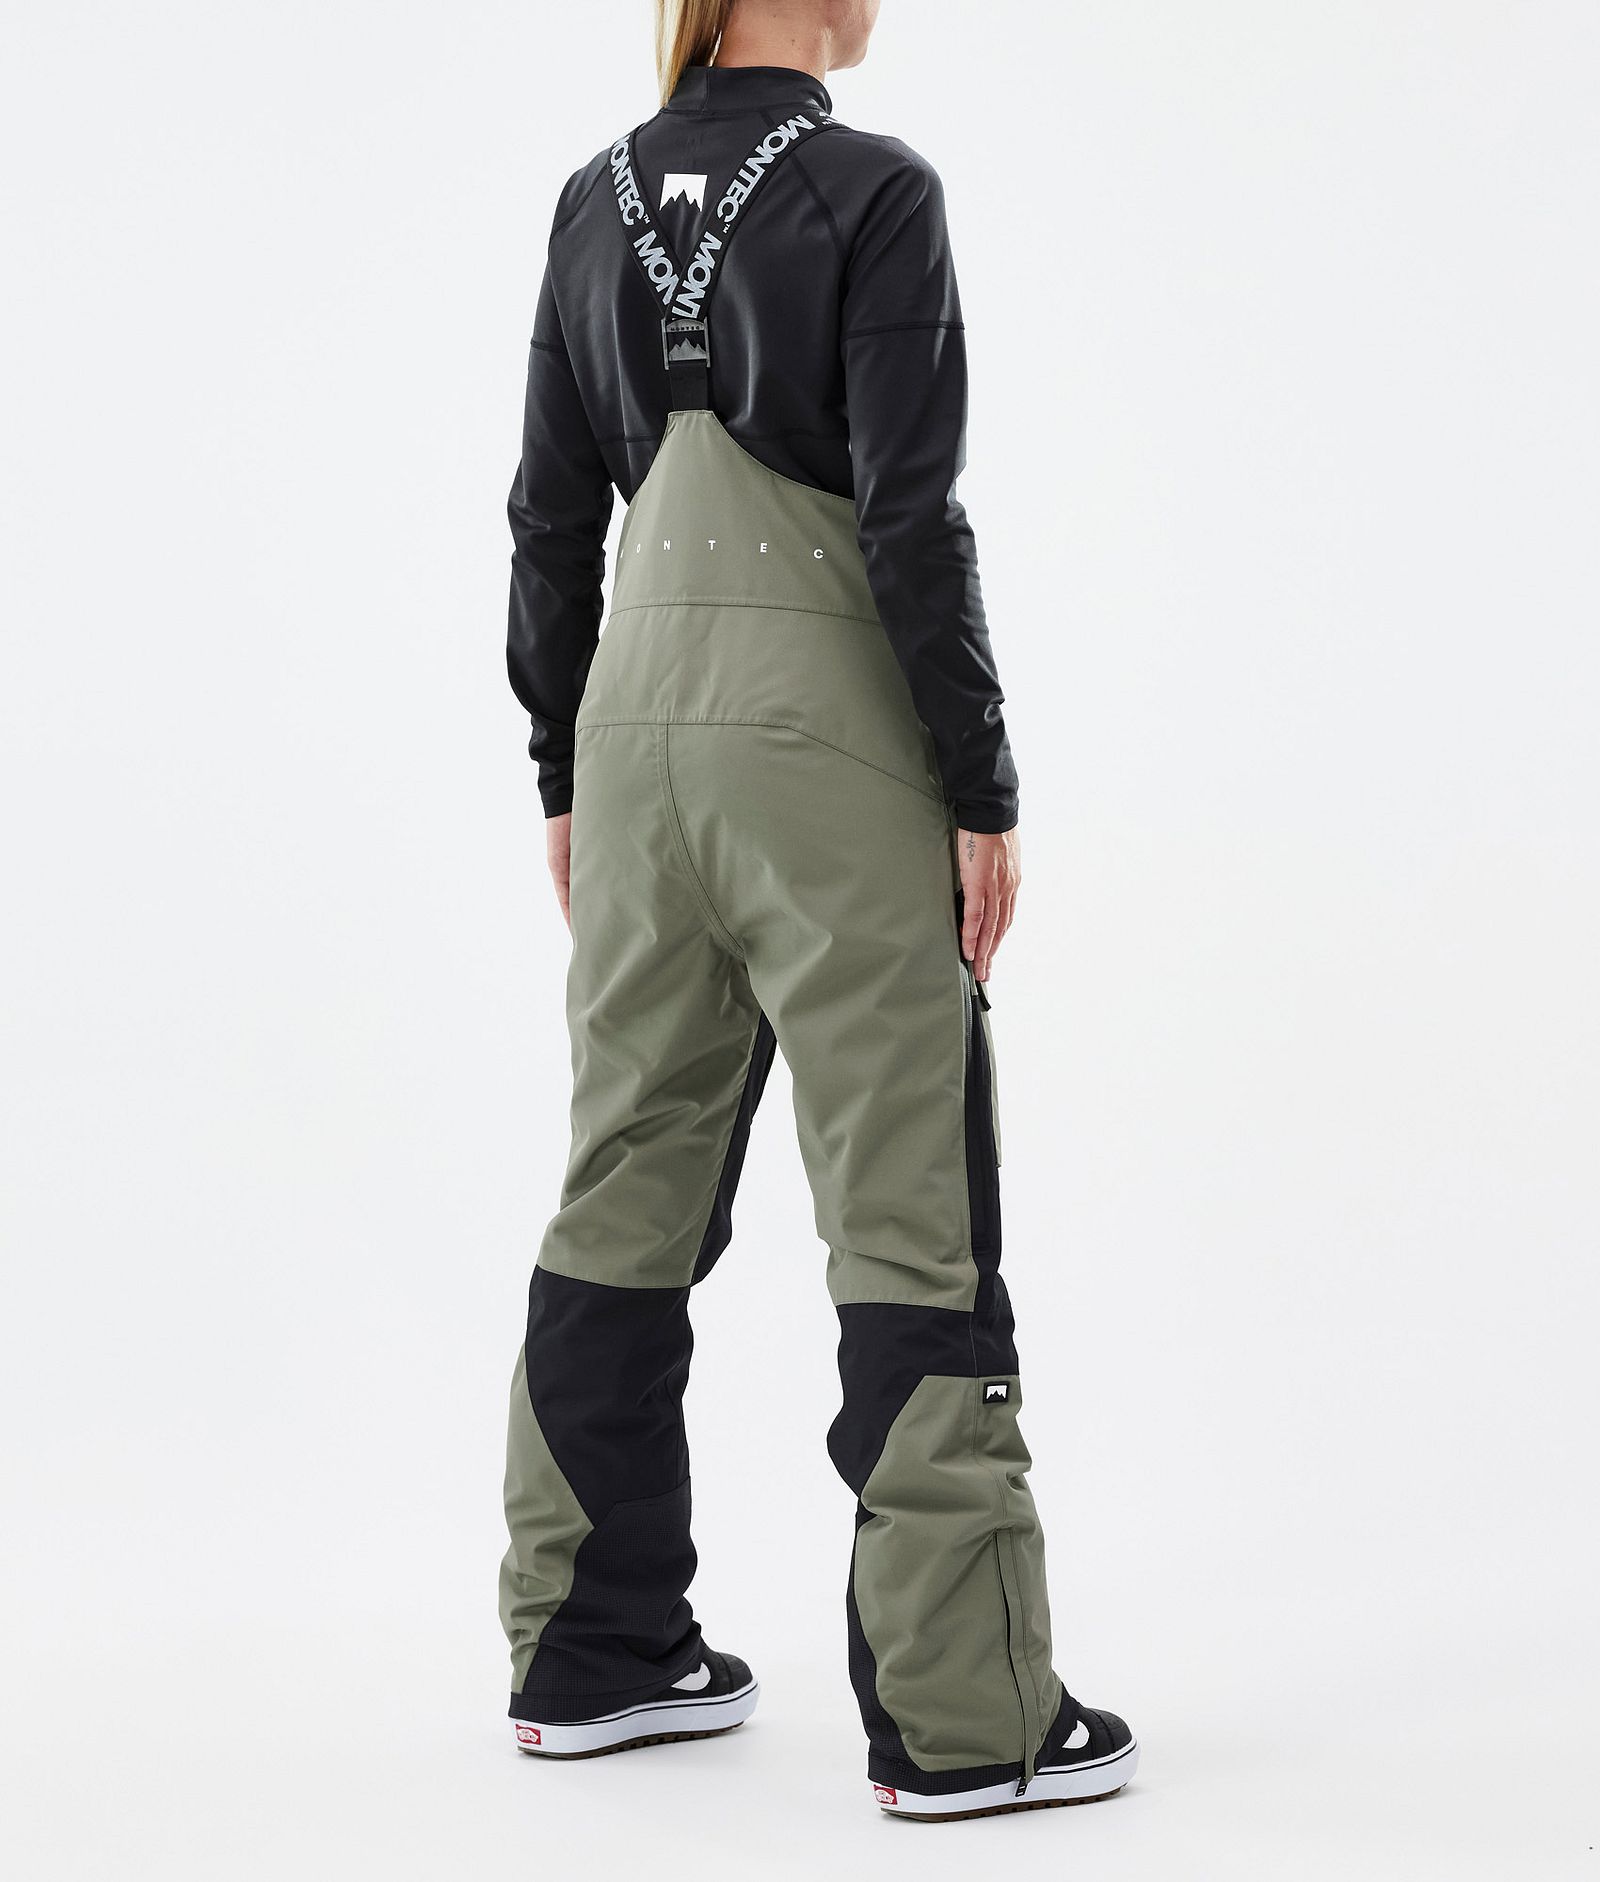 Fawk W Spodnie Snowboardowe Kobiety Greenish/Black